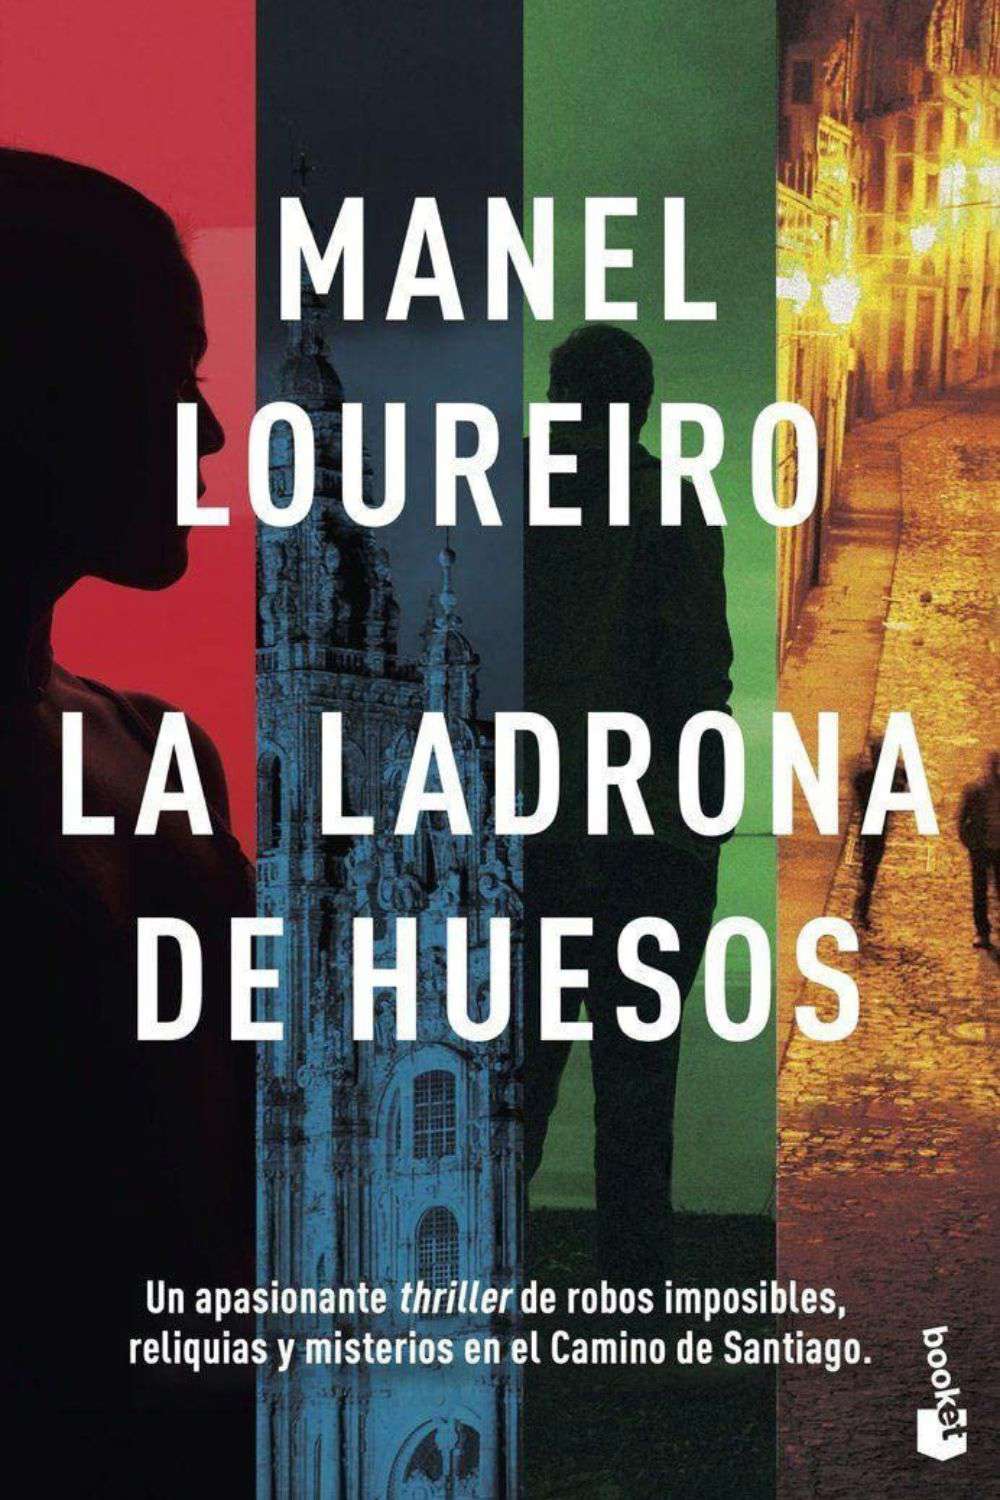 'La ladrona de huesos' de Manel Loureiro